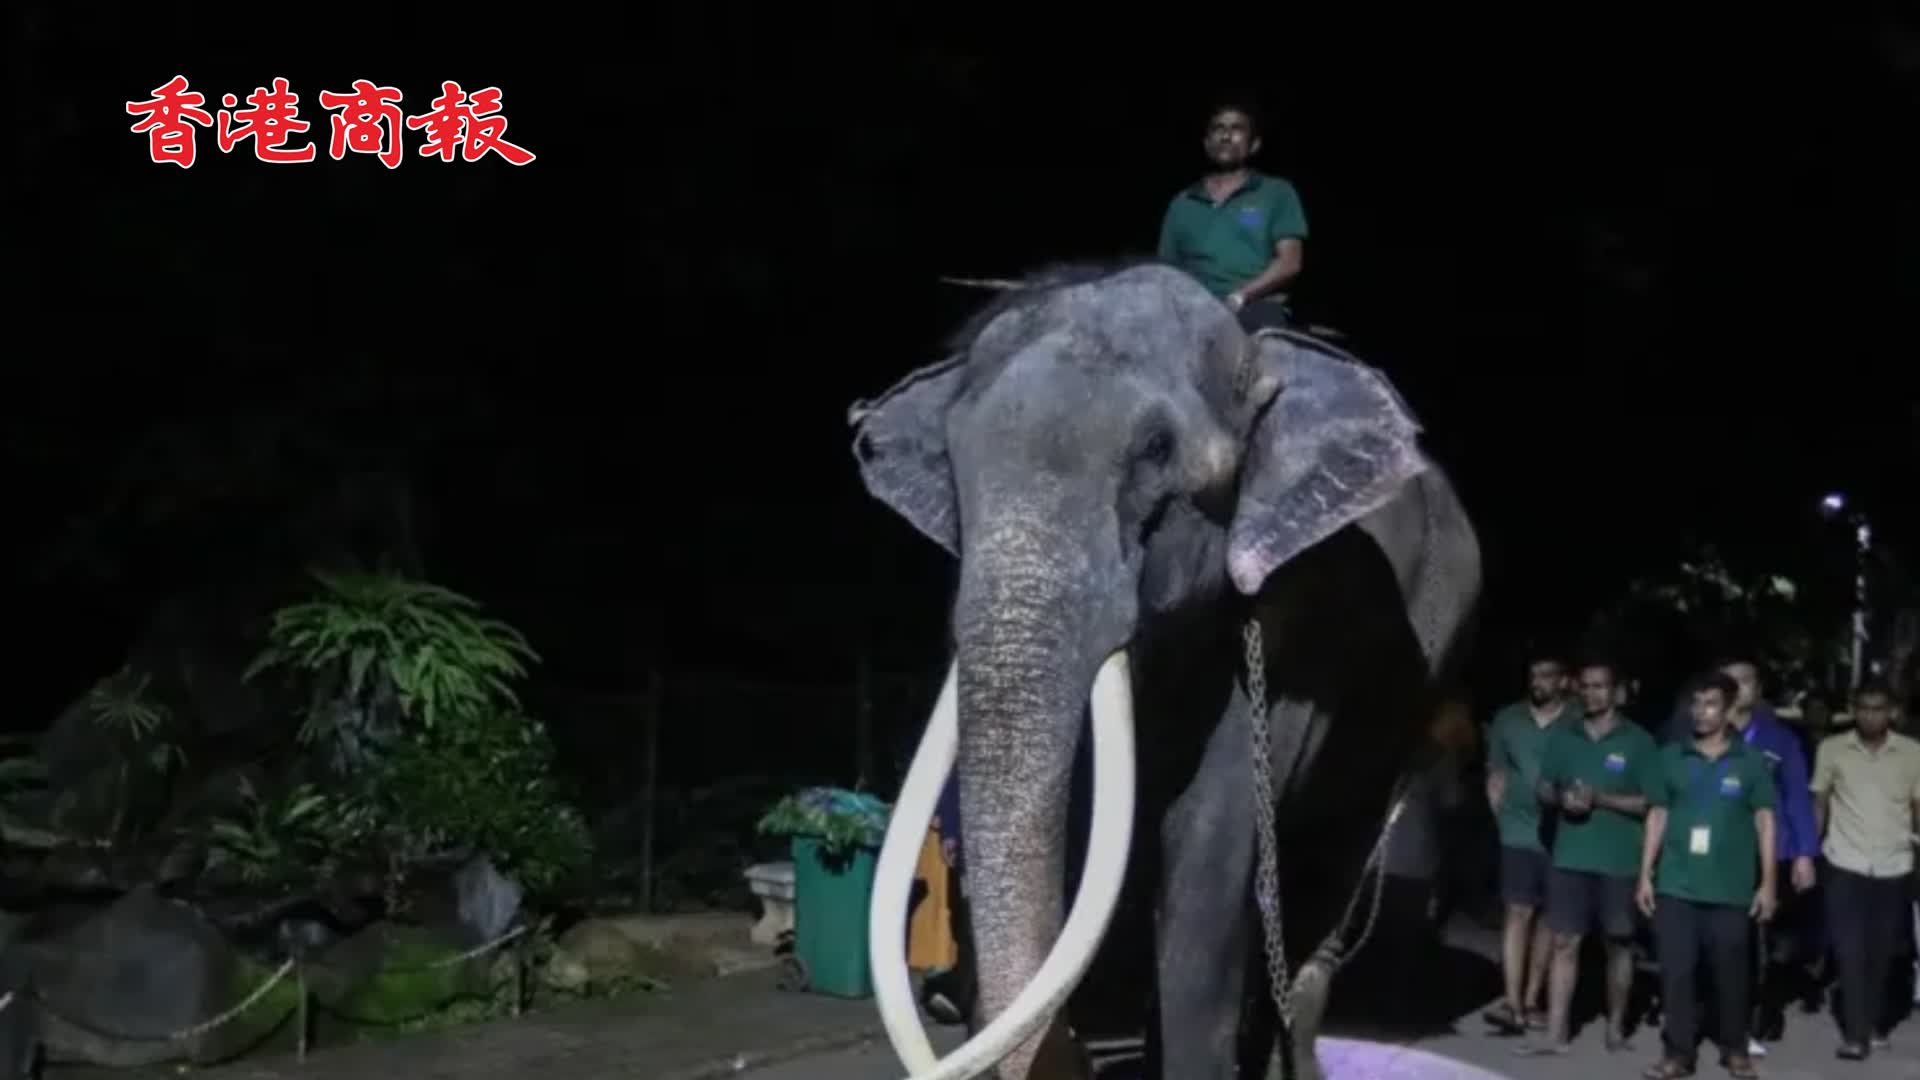 有片 | 泰國大象疑似在國外受虐 斯里蘭卡總理道歉